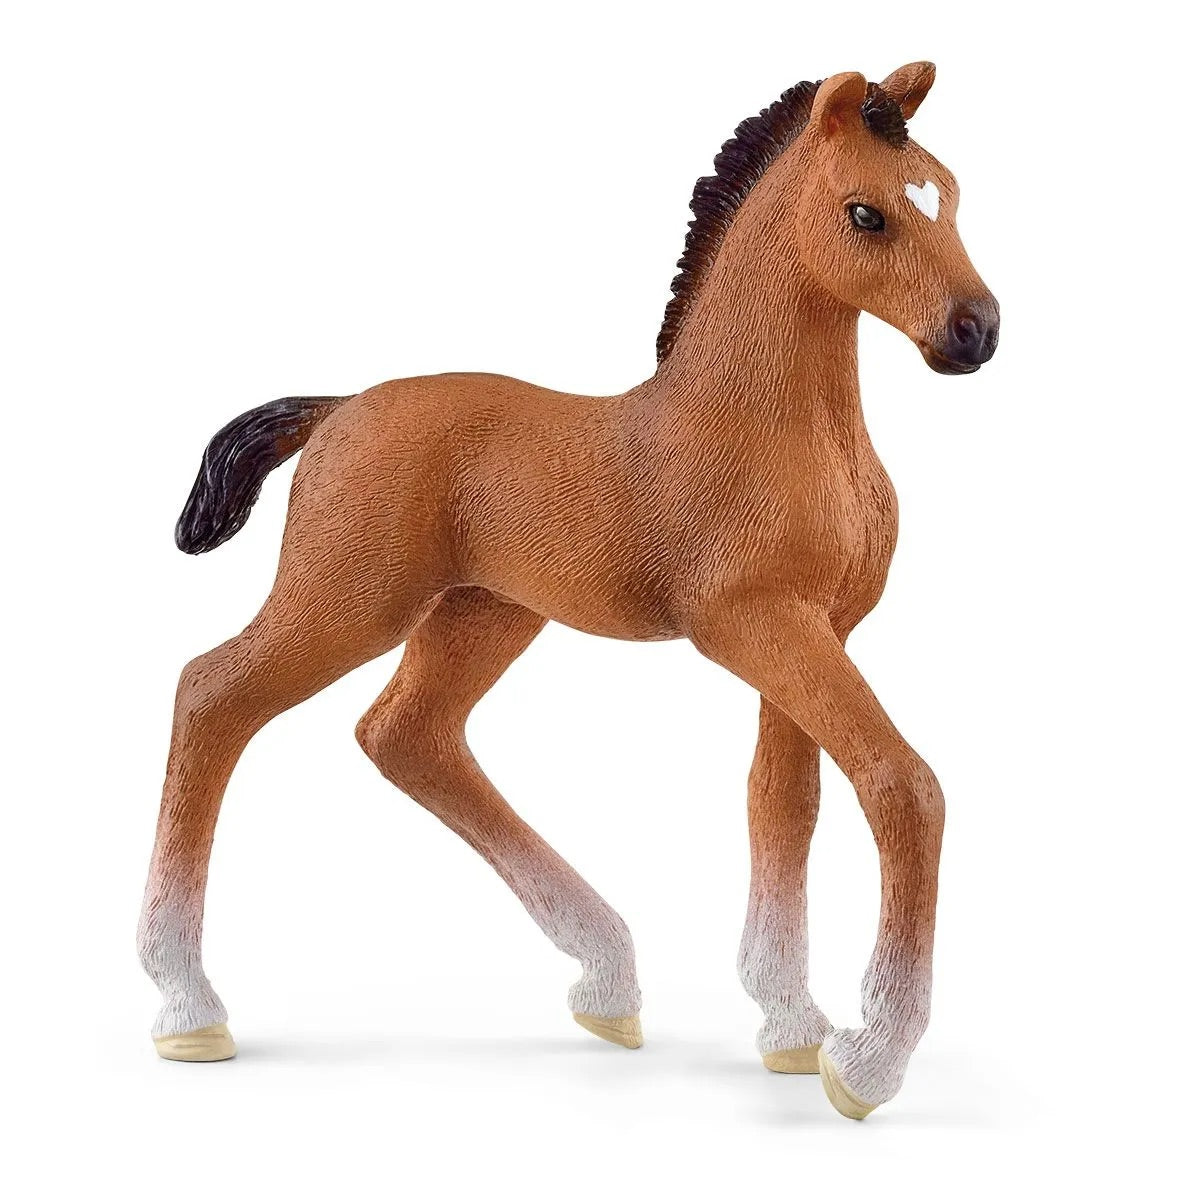 Oldenburger Foal Figurine by Schleich #13947